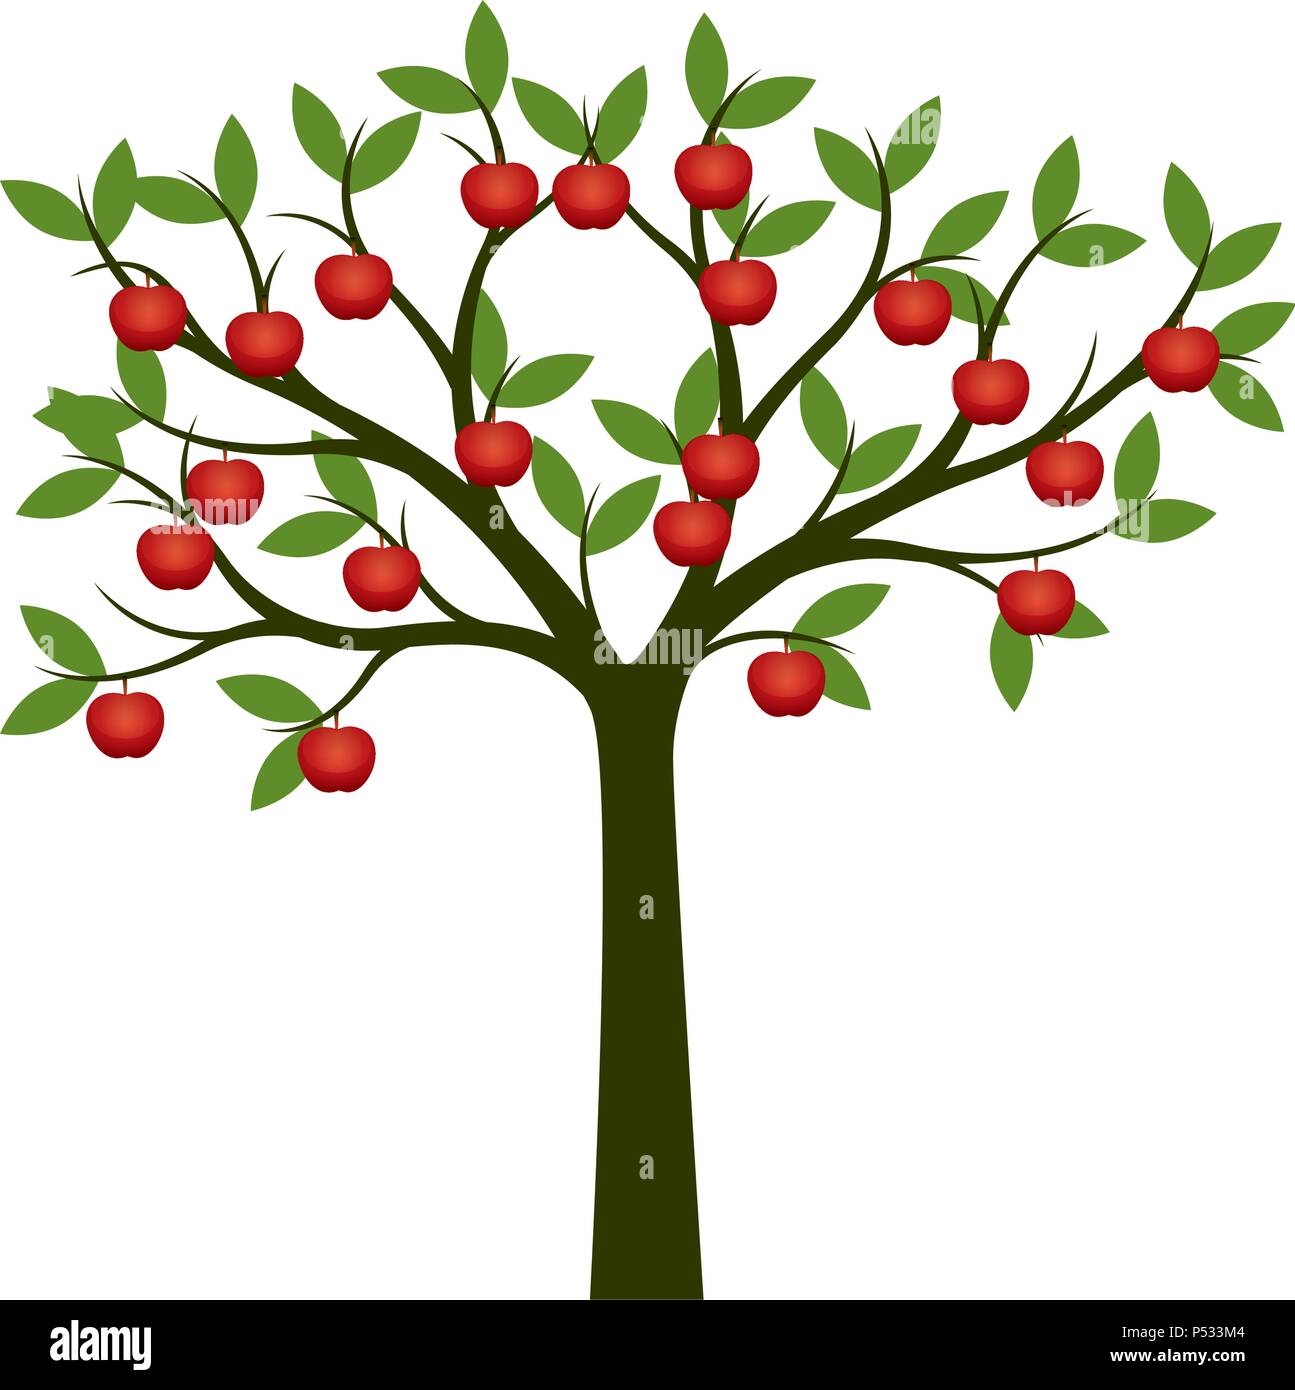 Albero di mele con mela rossa frutti. Illustrazione Vettoriale. Illustrazione Vettoriale